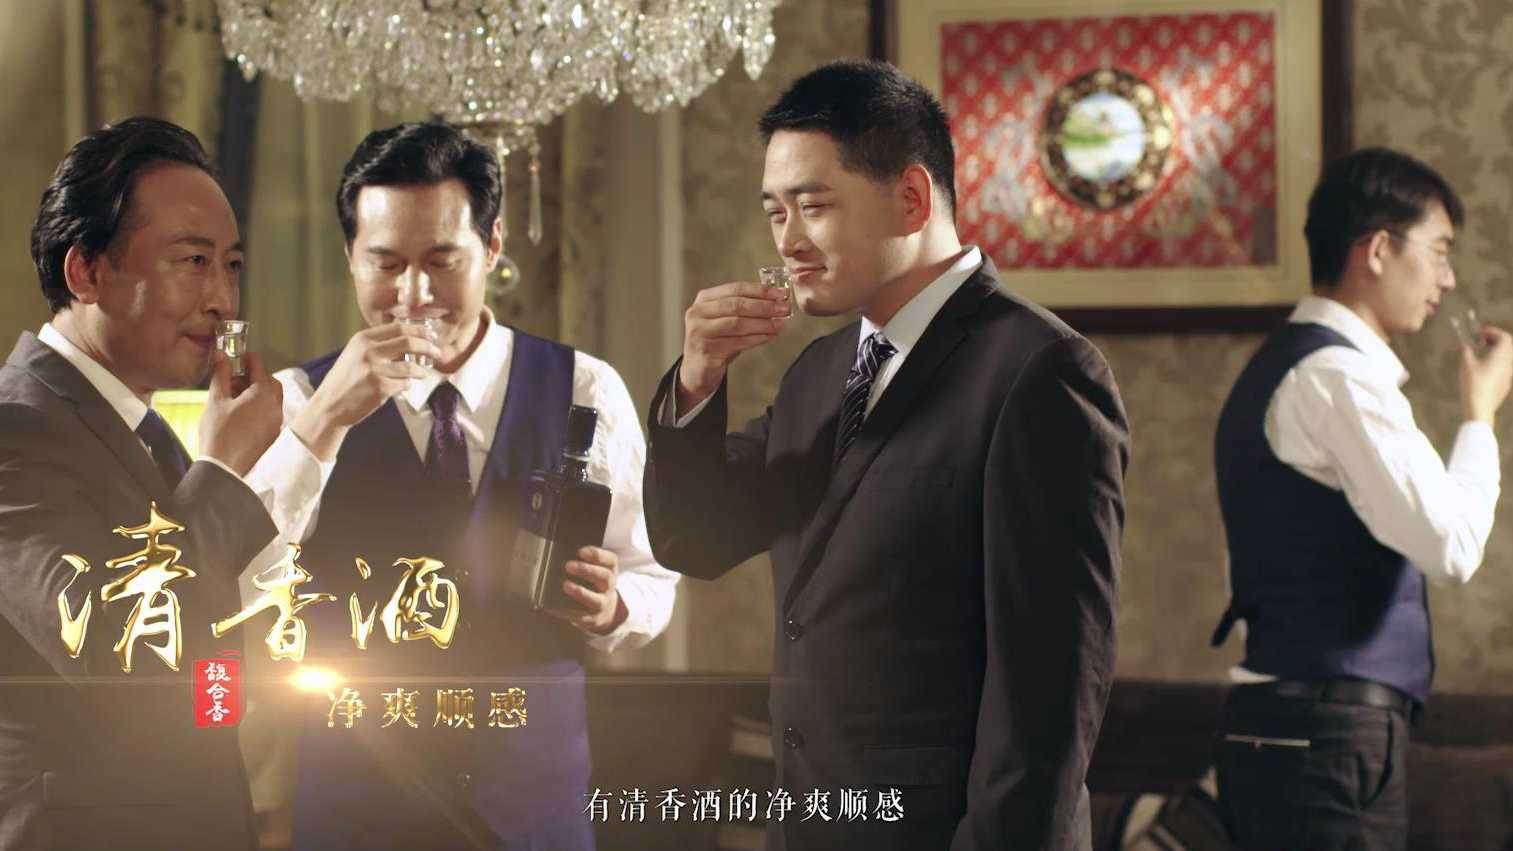 郑州宣传片拍摄公司 | 皇沟馥合香白酒宣传片